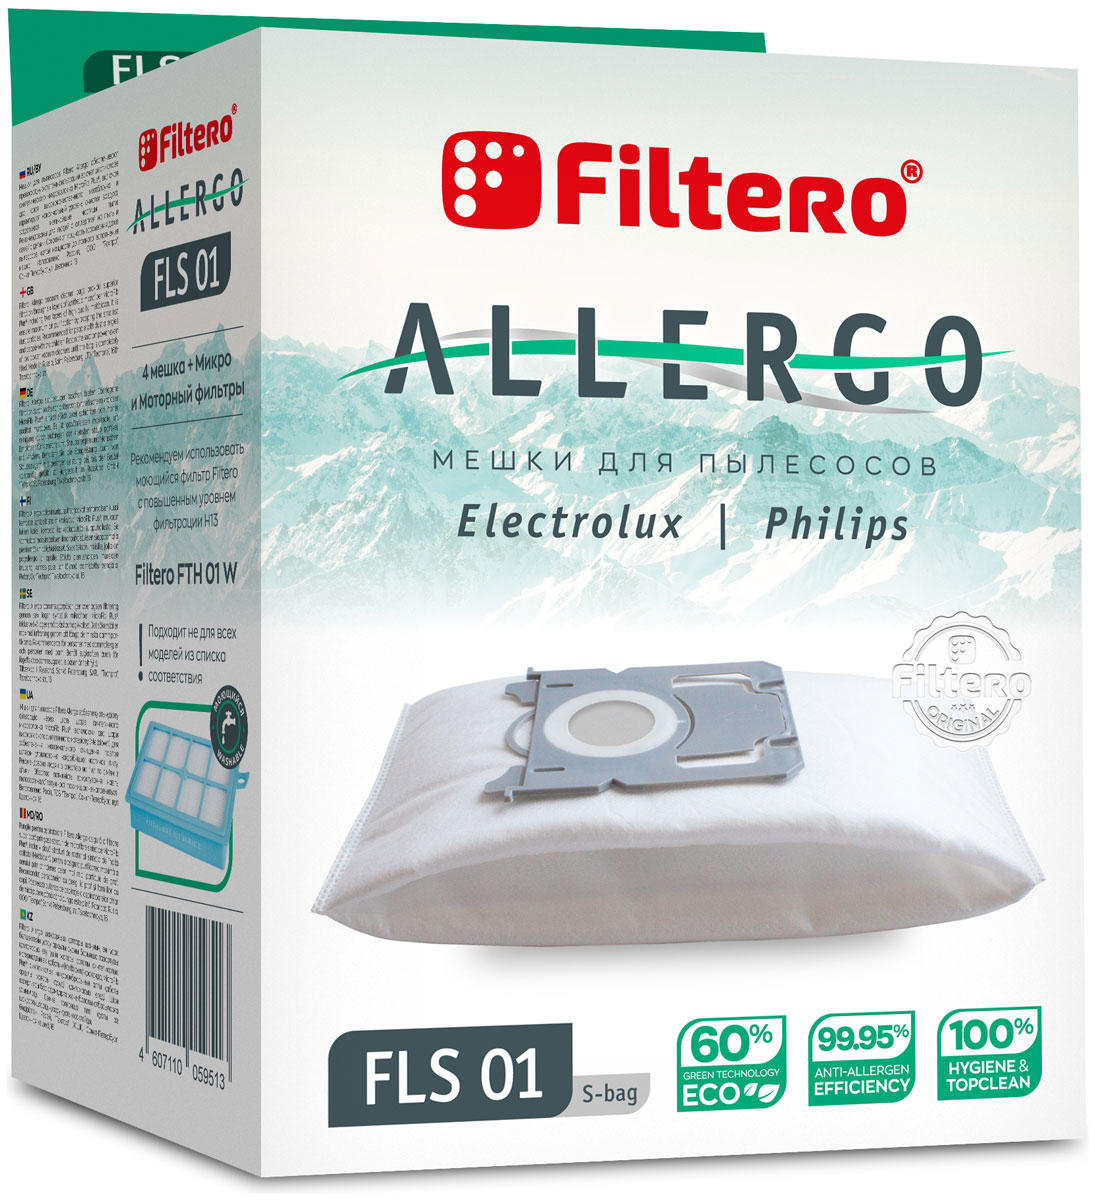 Пылесборники Filtero FLS 01 S-bag Allergo 4 шт. + моторный фильтр и микрофильтр пылесборники filtero mie 02 allergo 4 шт моторный фильтр и микрофильтр